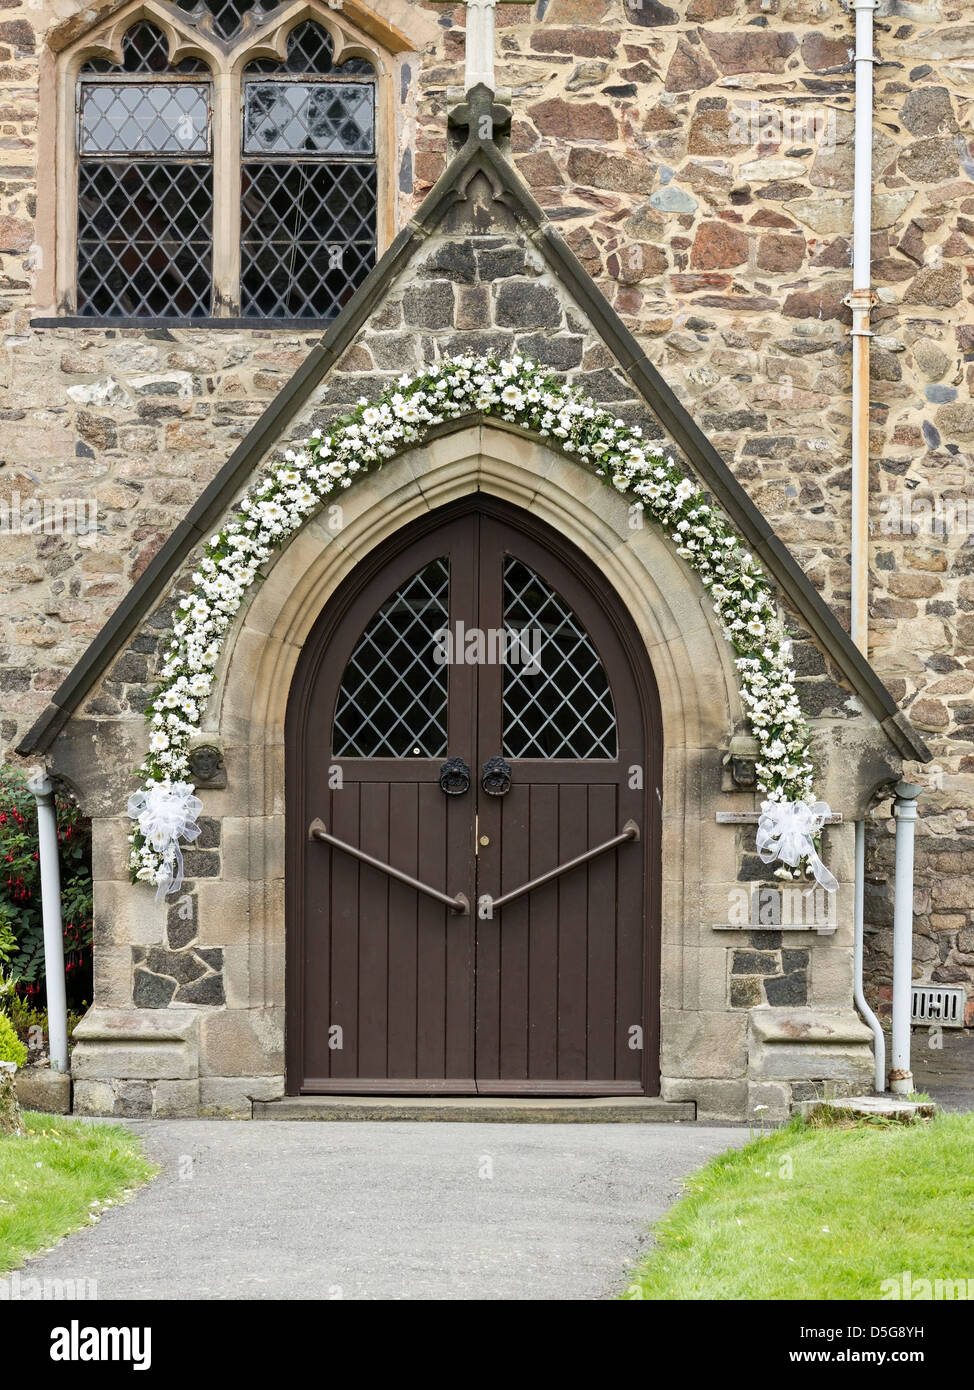 Kirche-Tür mit Blumen Hochzeit Girlande, All Saints Church, Newtown Linford, Leicestershire, England, UK Stockfoto